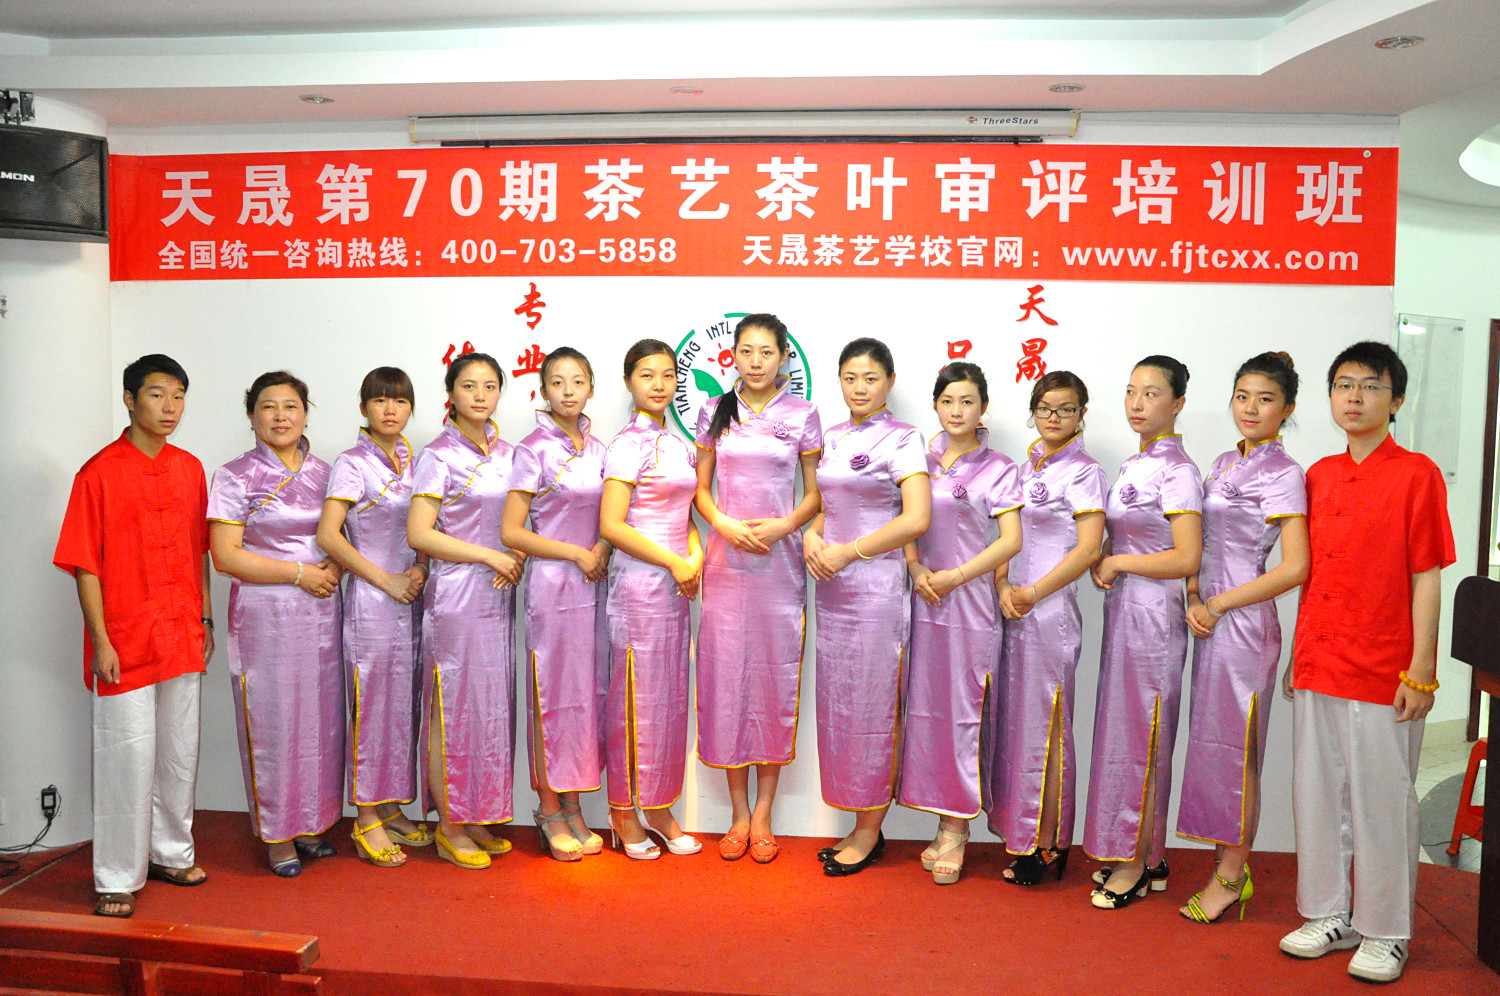 第70期天晟茶艺培训学校中国茶学系统培训班全体学员合照